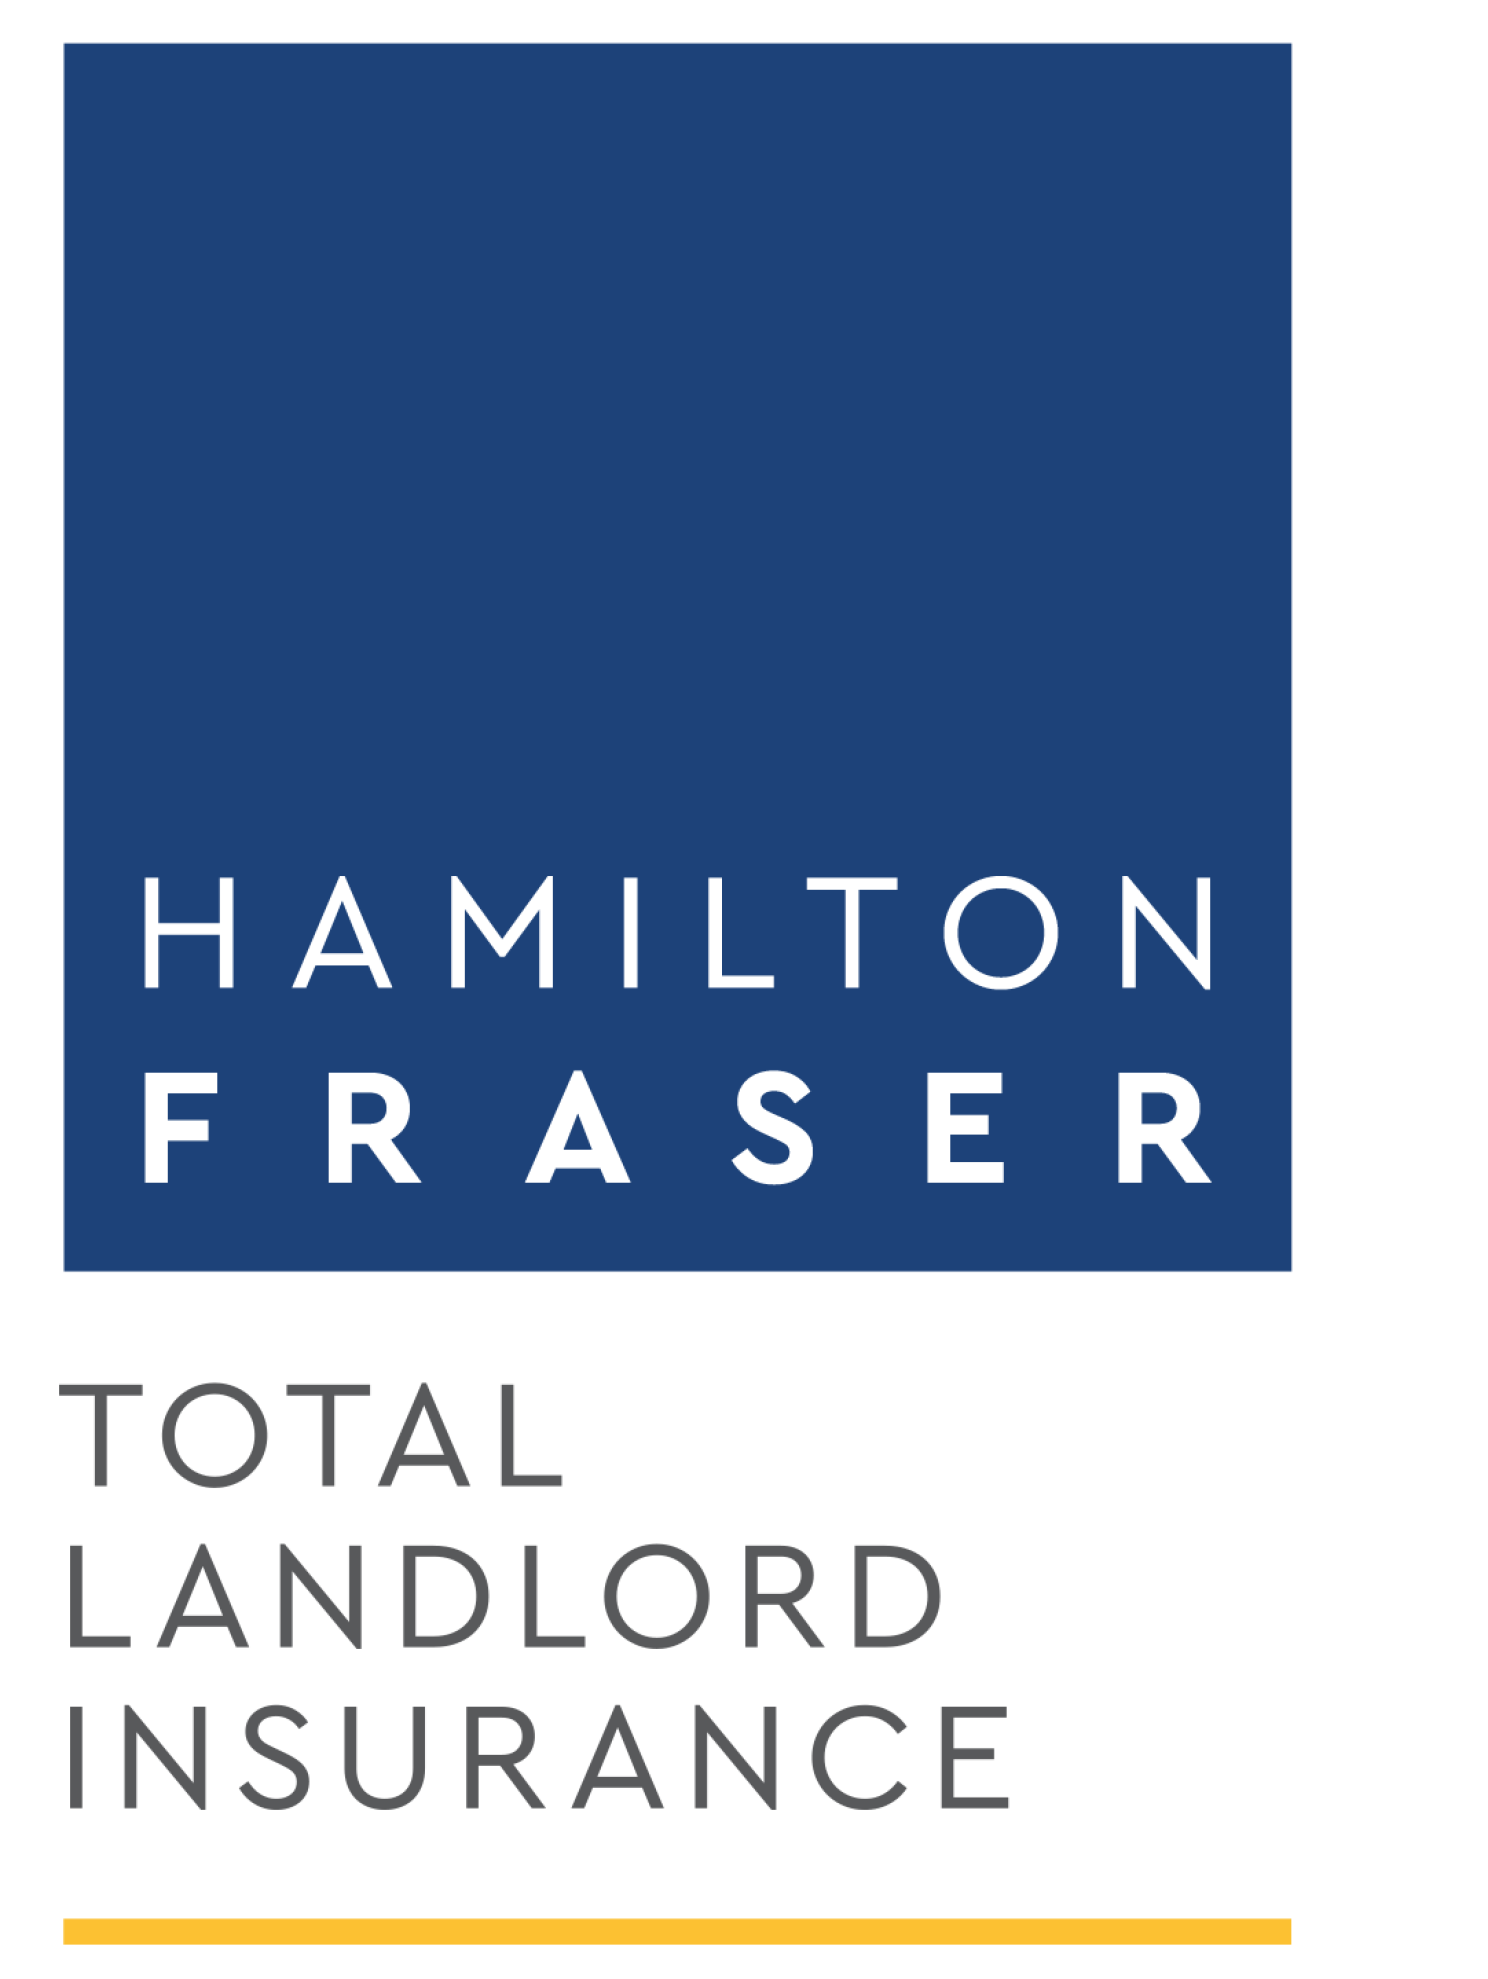 Hamilton Fraser Total Landlord Insurance